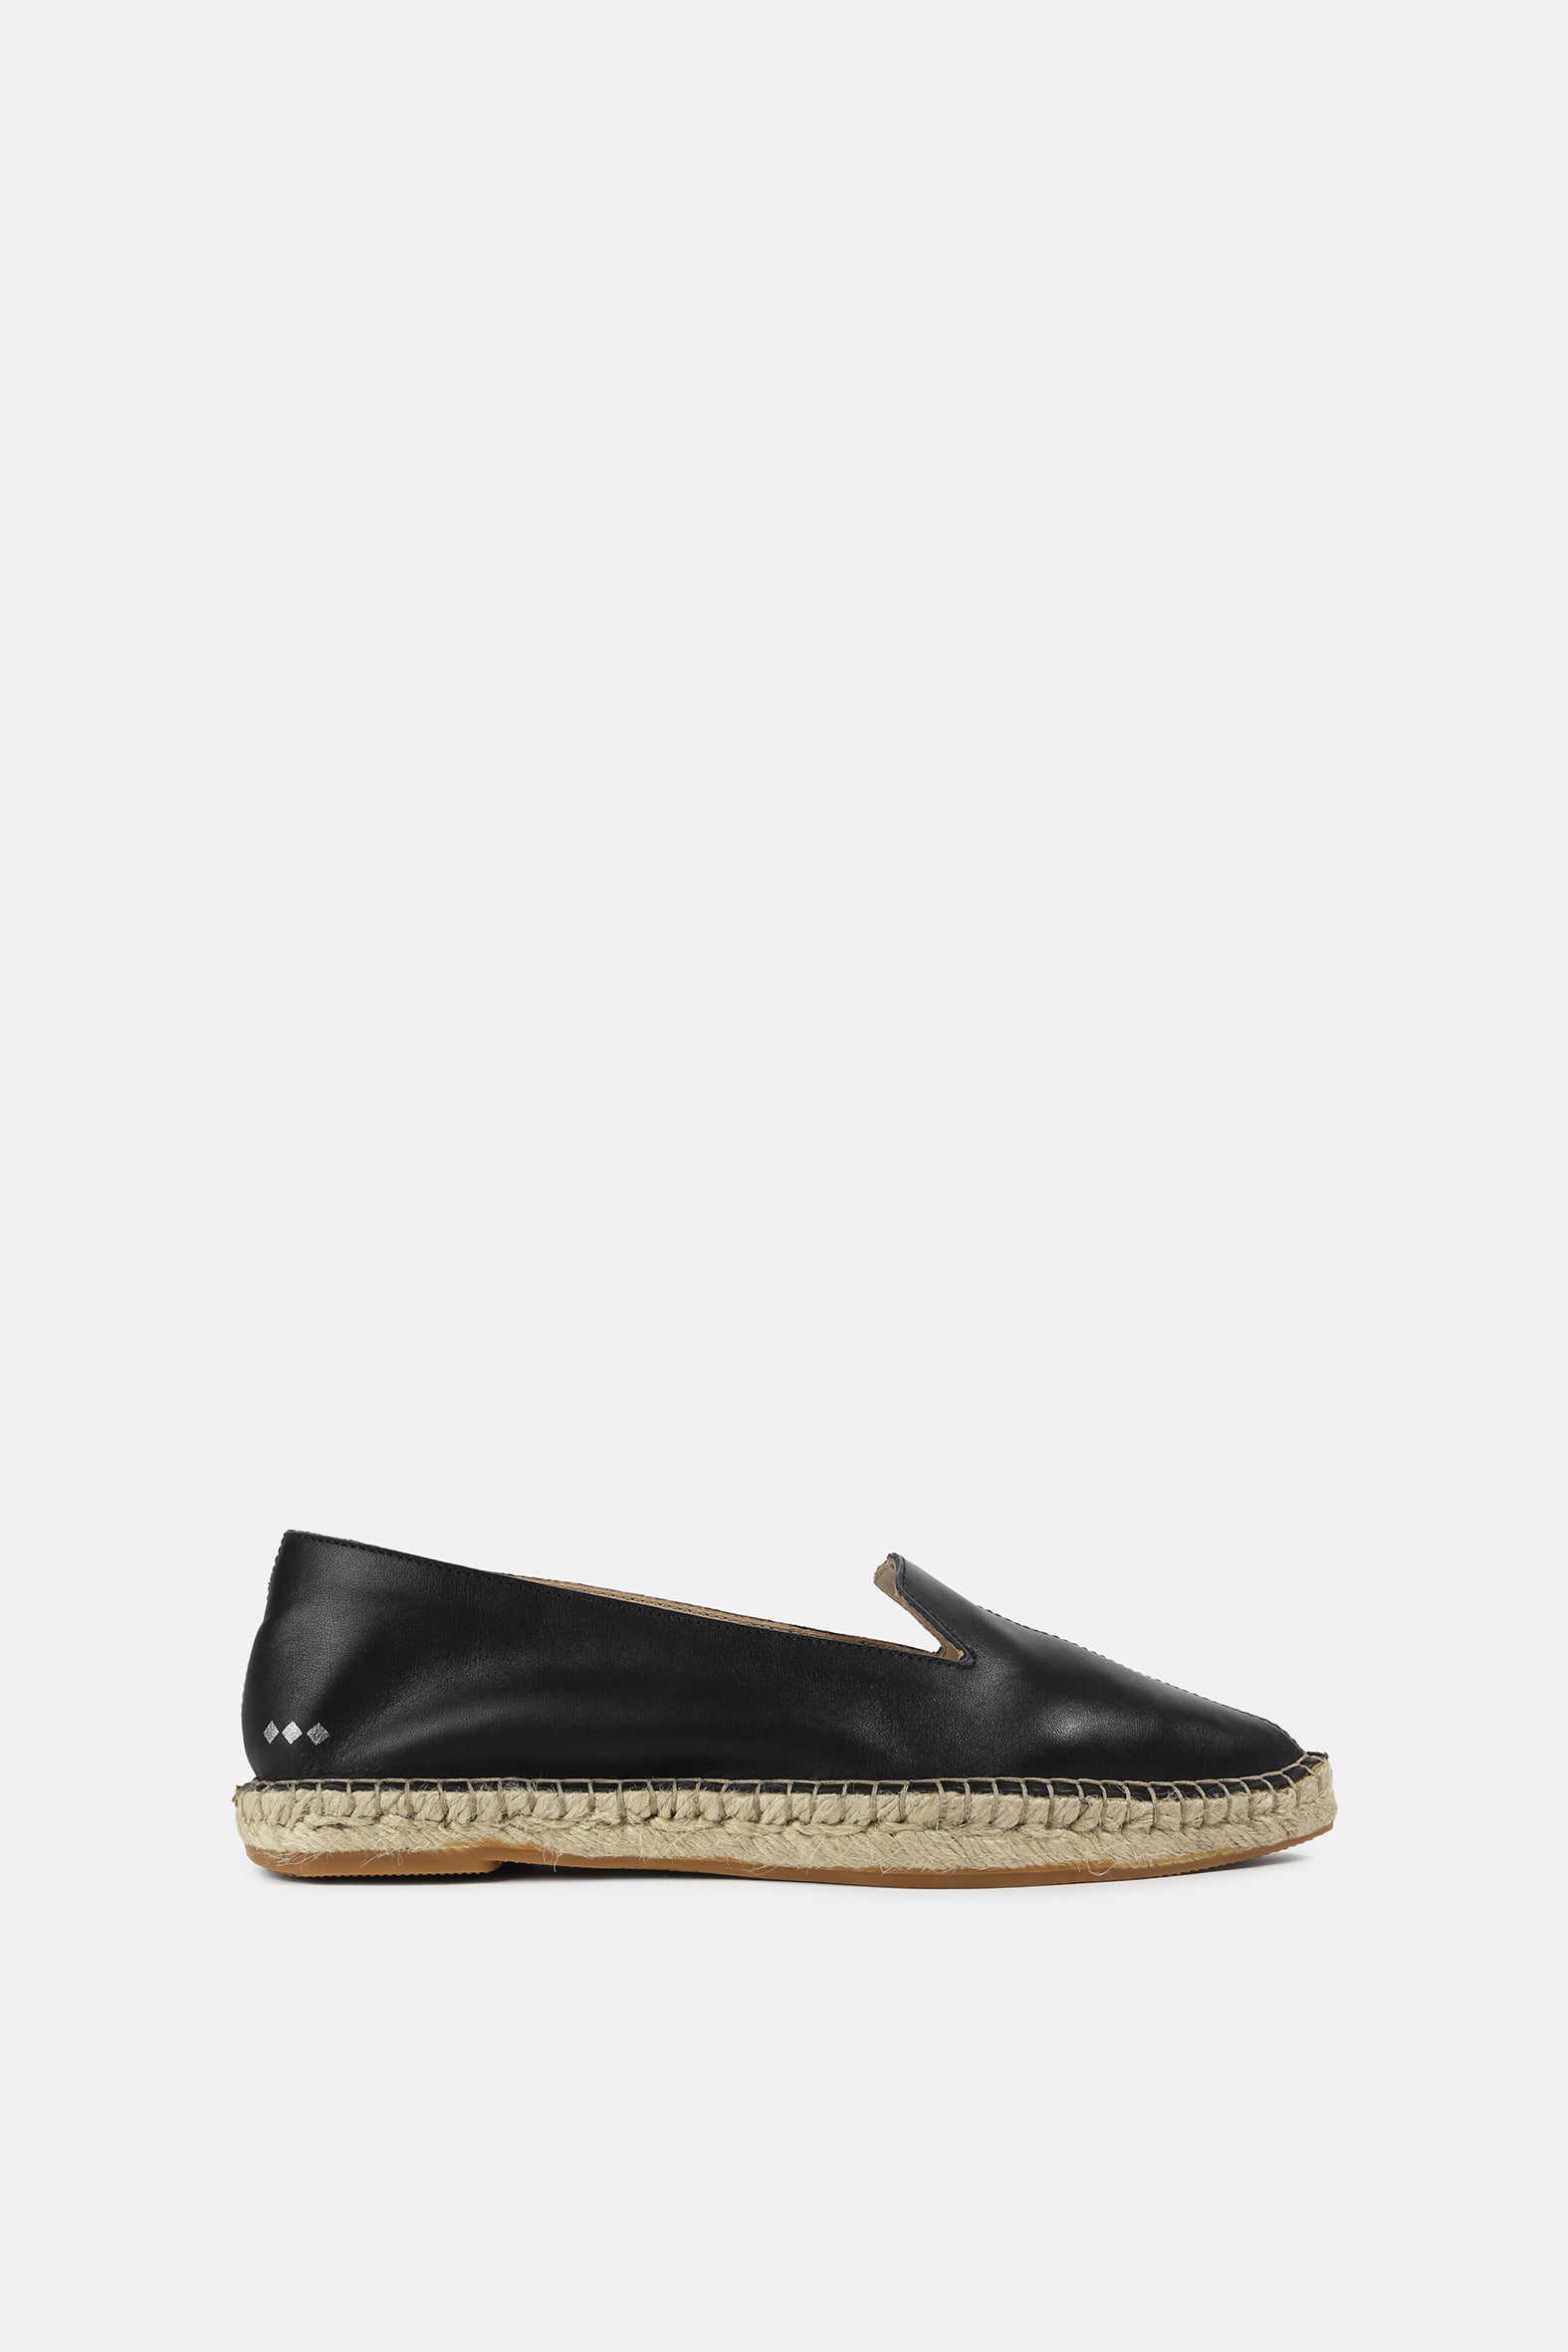 Pilgrim | Leather Loafer